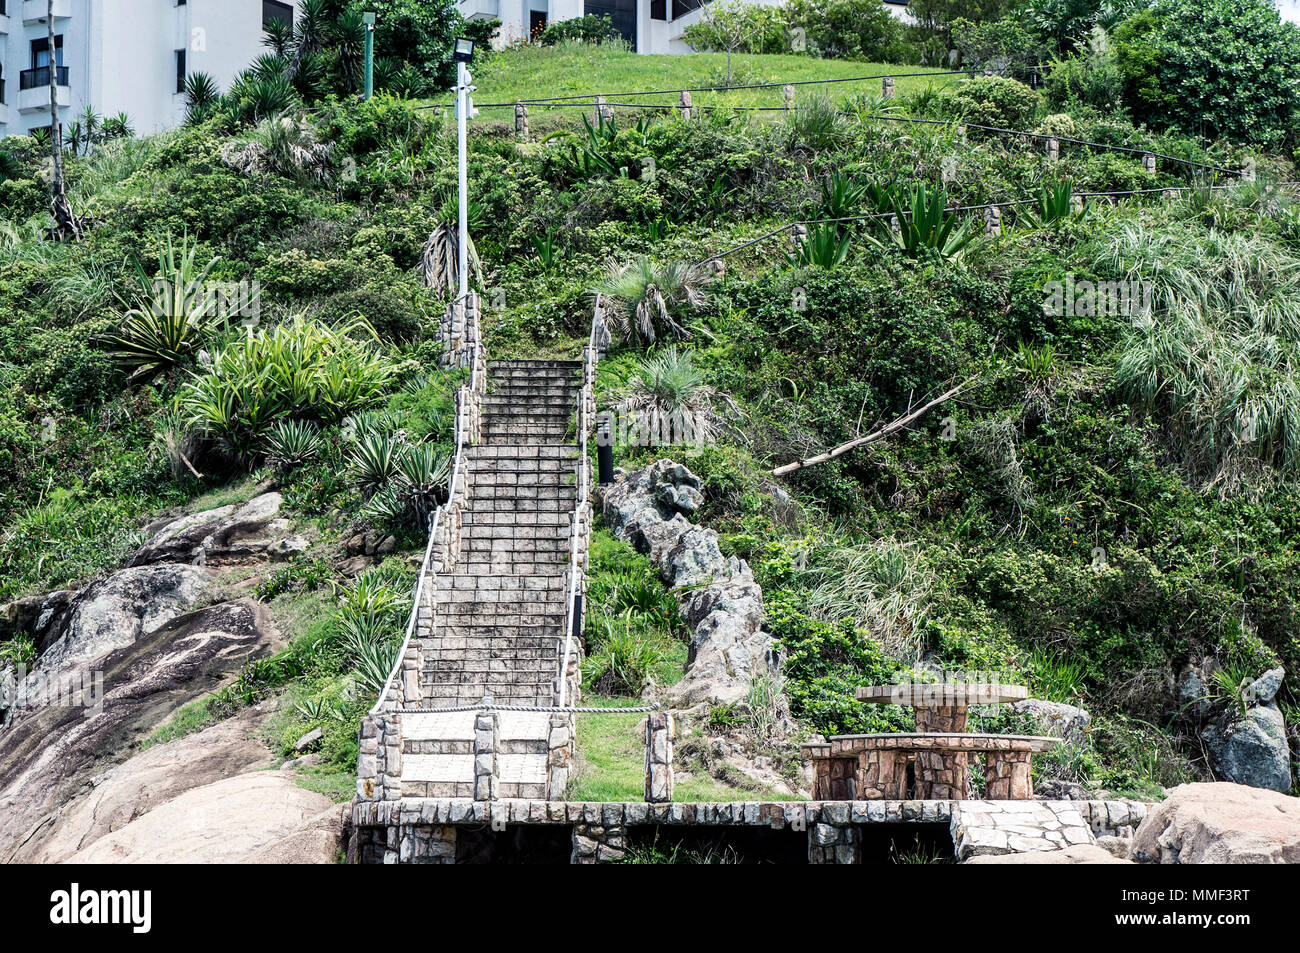 Pietre di roccia scalinata montagna collina vegetazione bench table brasile Foto Stock